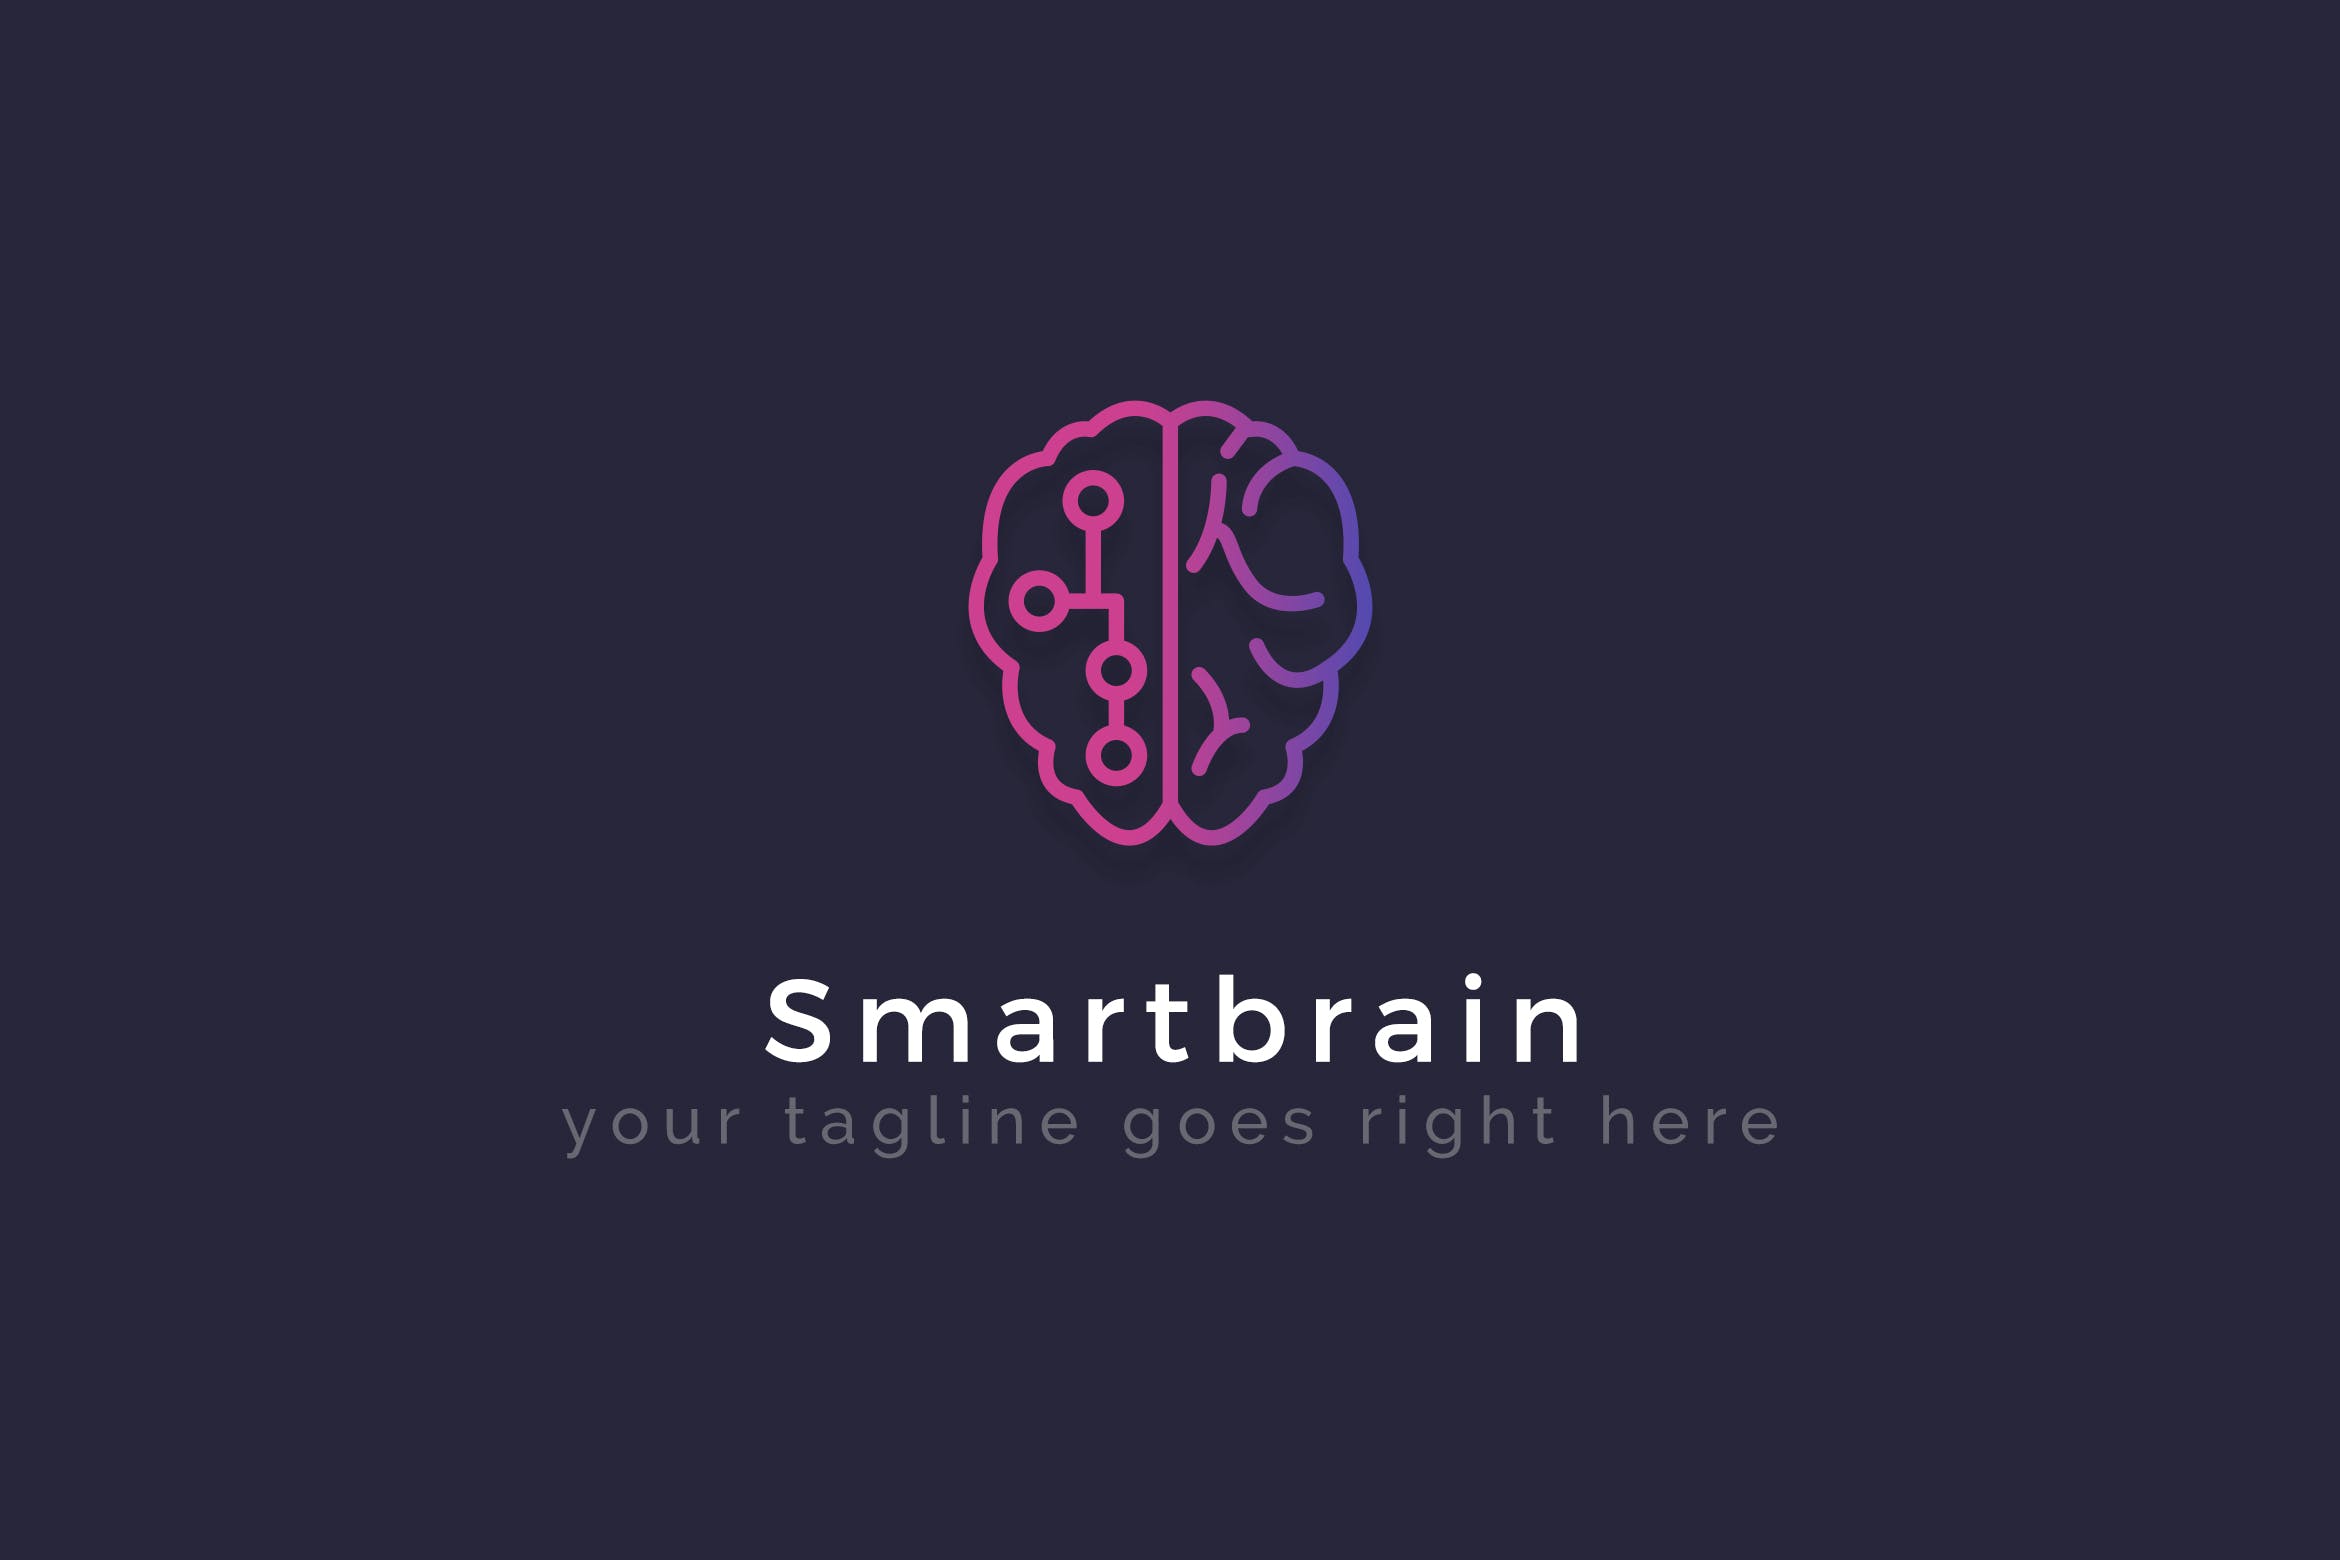 智能大脑AI品牌Logo设计第一素材精选模板 Smartbrain – Creative Logo Template插图